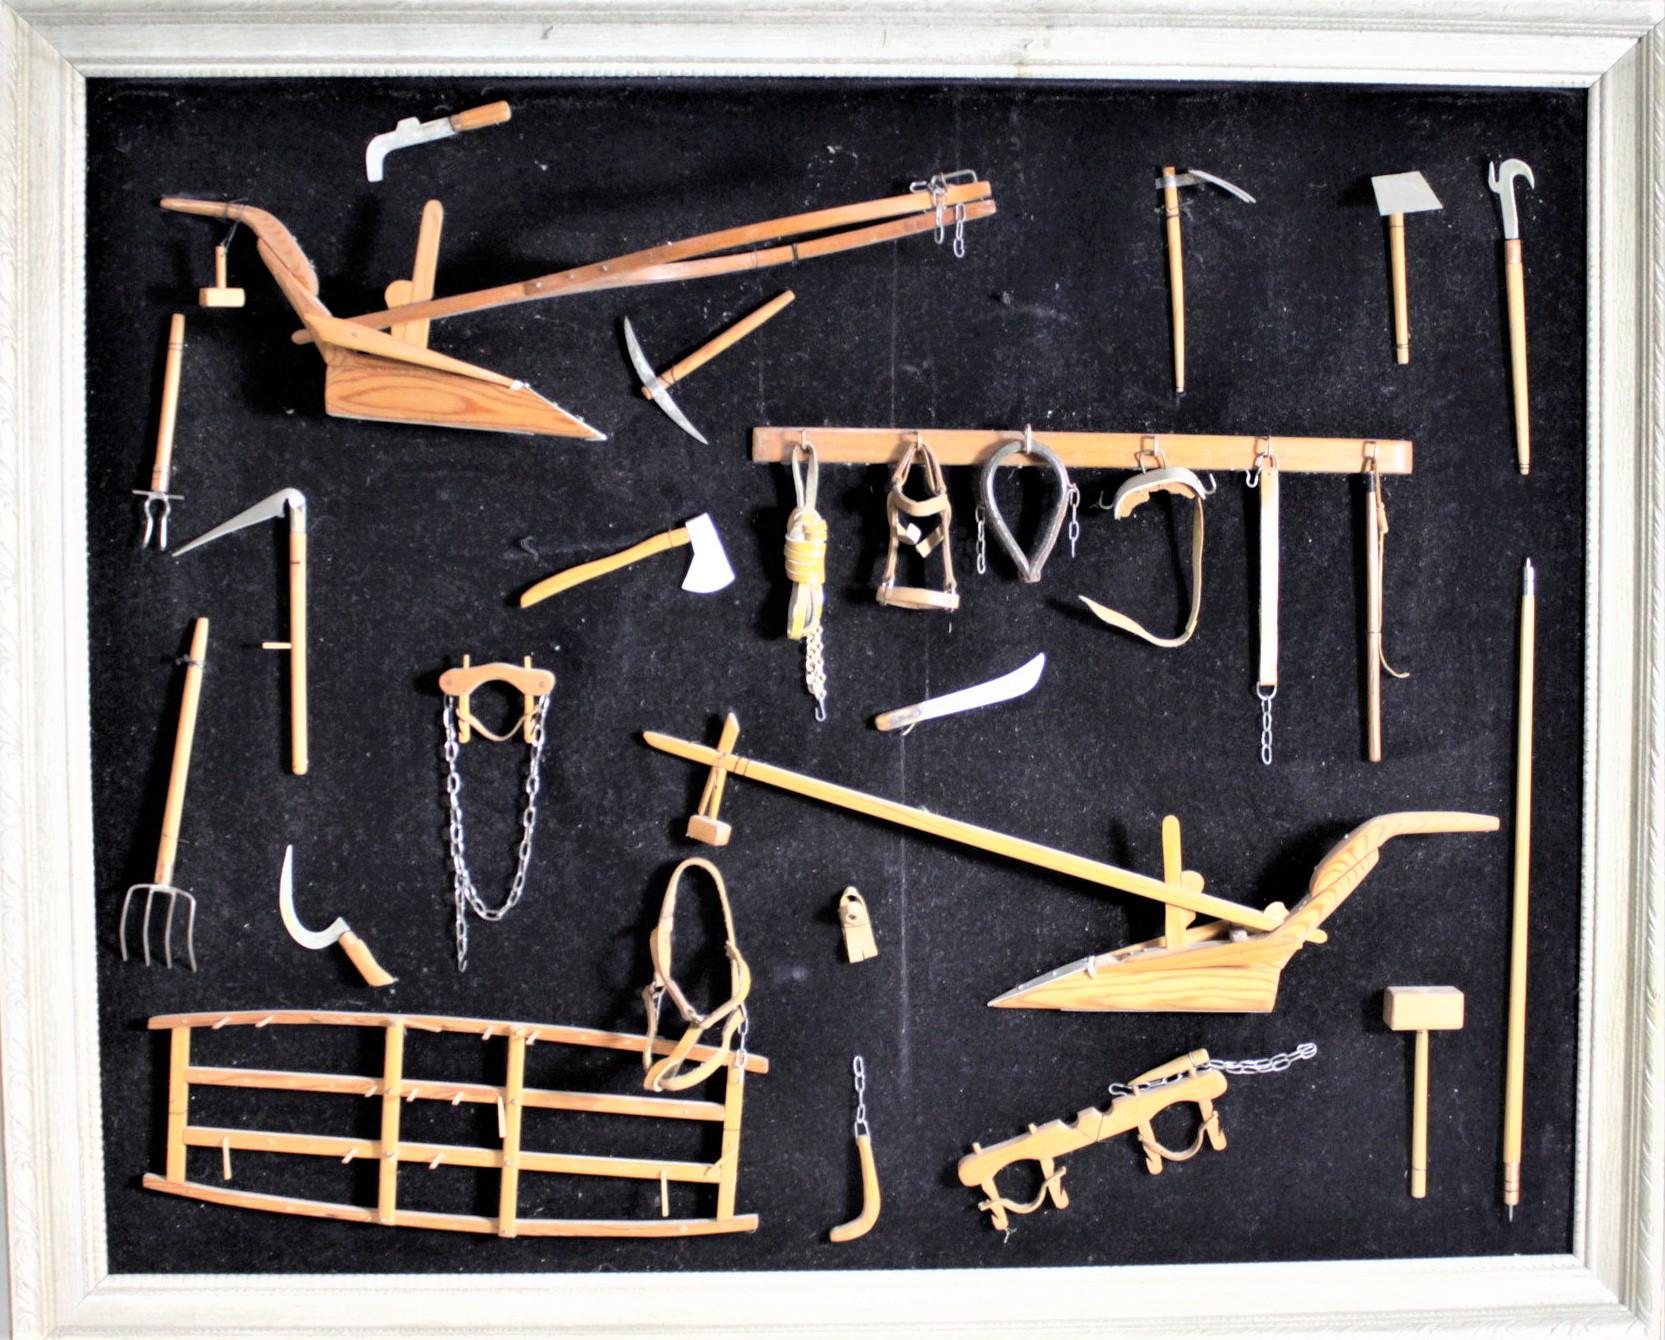 Cette collection encadrée de plus de deux douzaines d'outils agricoles antiques miniatures fabriqués à la main n'est pas signée, mais on suppose qu'elle a été réalisée au Canada vers 1969 dans un style Folk Art. Les outils sont sculptés à la main et